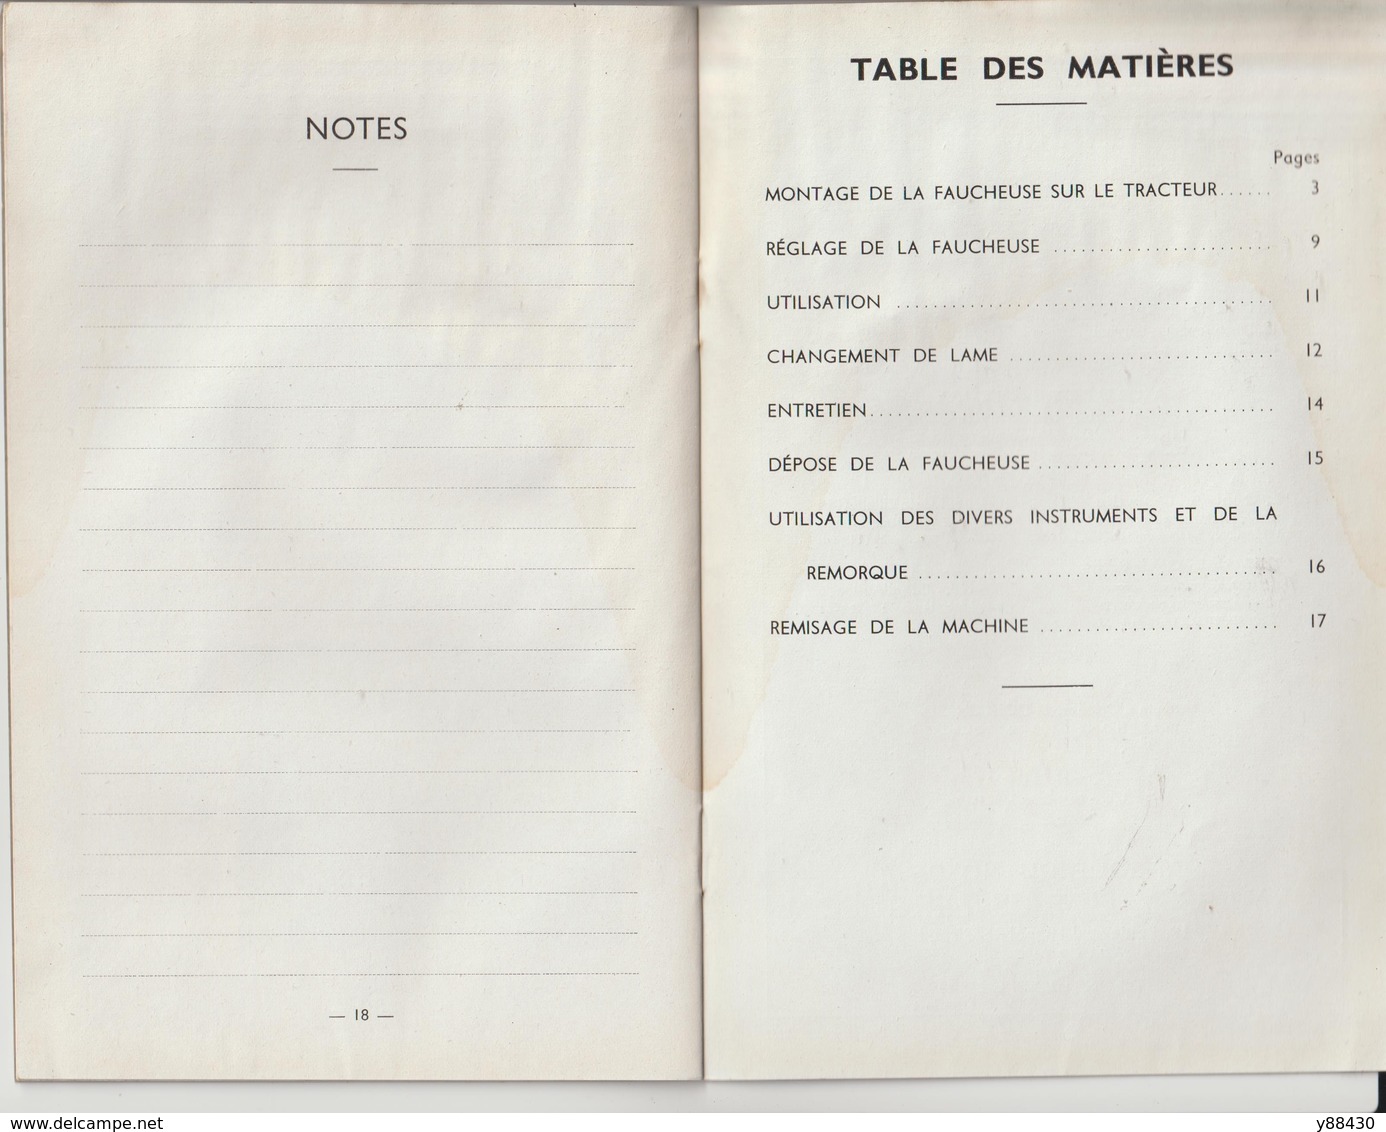 Livret pour FAUCHEUSE PORTEE des années 50 - MASSEY HARRIS FERGUSON - 24 pages - 13 scan.